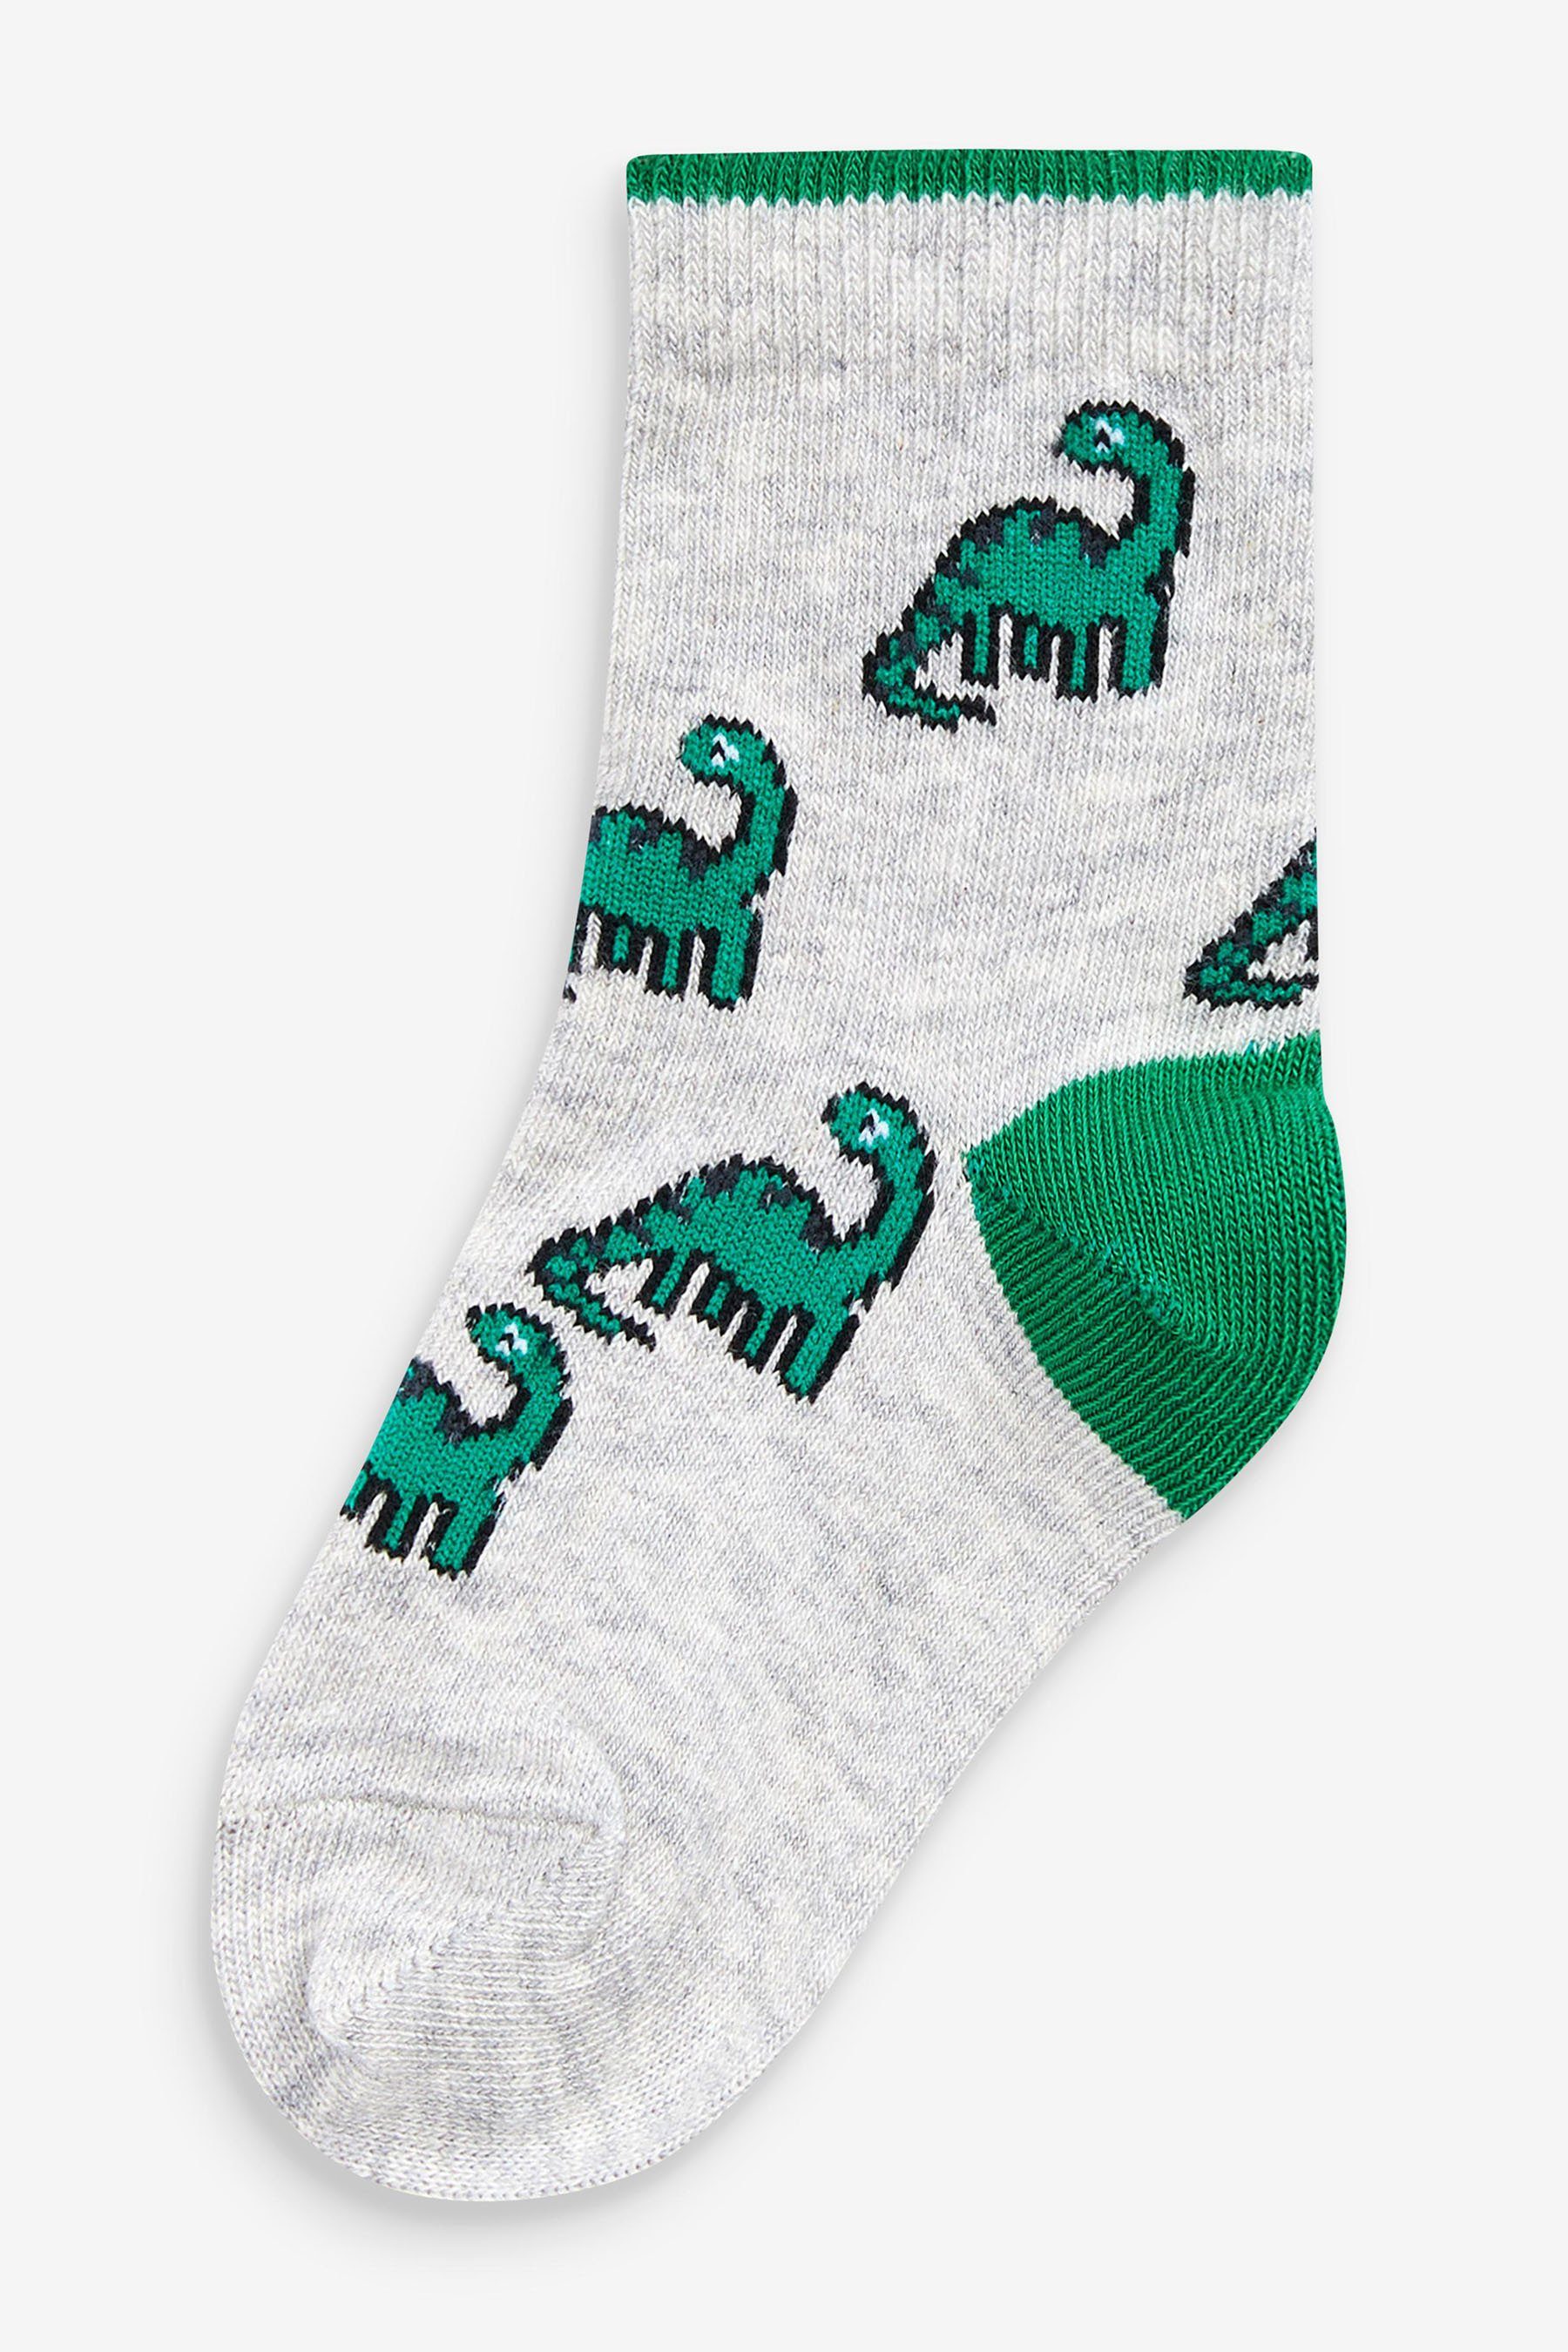 Next Haussocken Socken mit Baumwollanteil, hohem (1-Paar) 10er-Pack Bright Dino